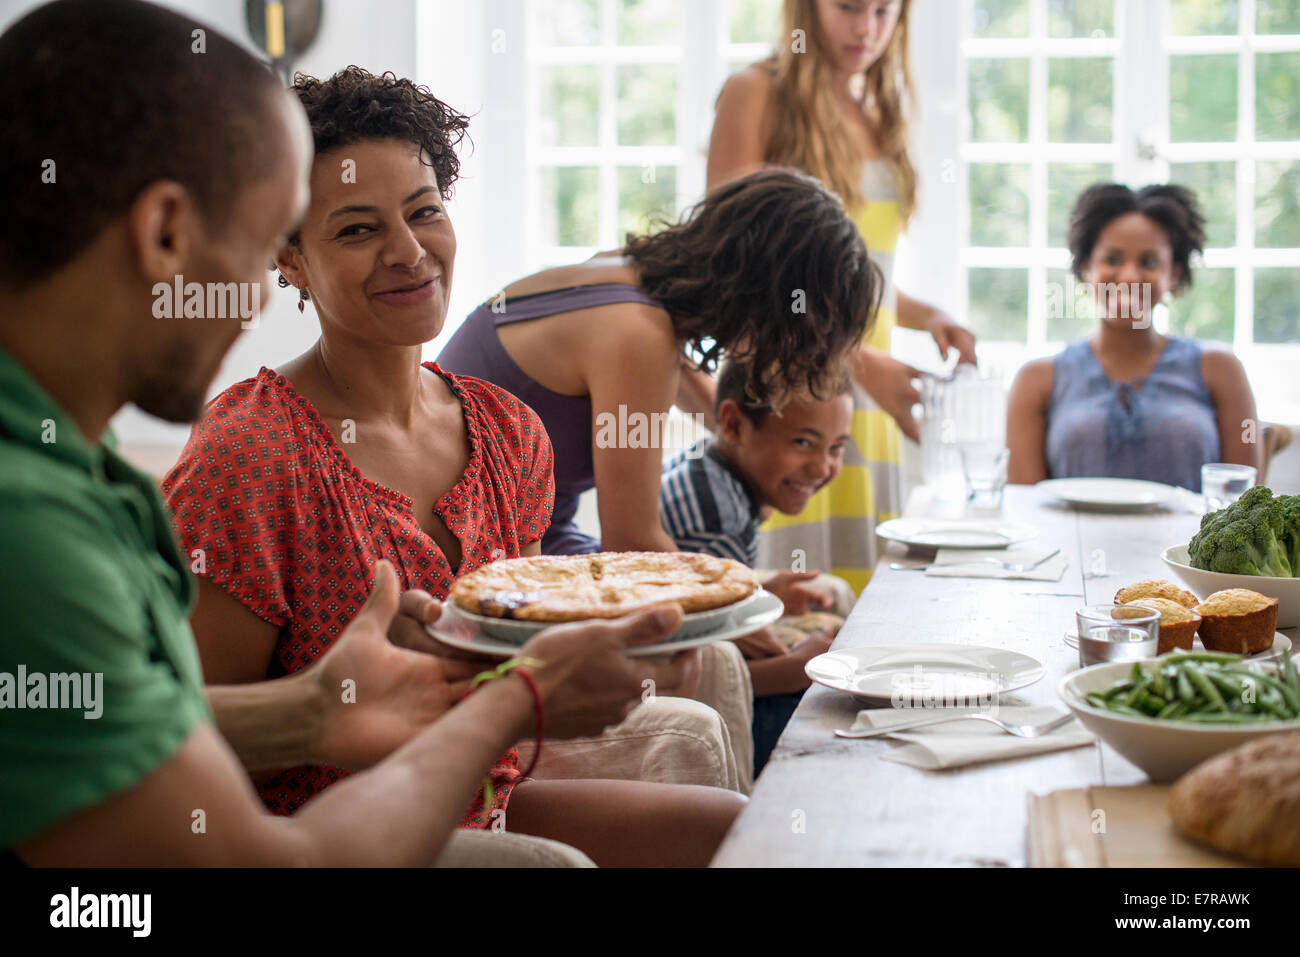 Une réunion de famille, hommes, femmes et enfants autour d'une table à manger partager un repas. Banque D'Images